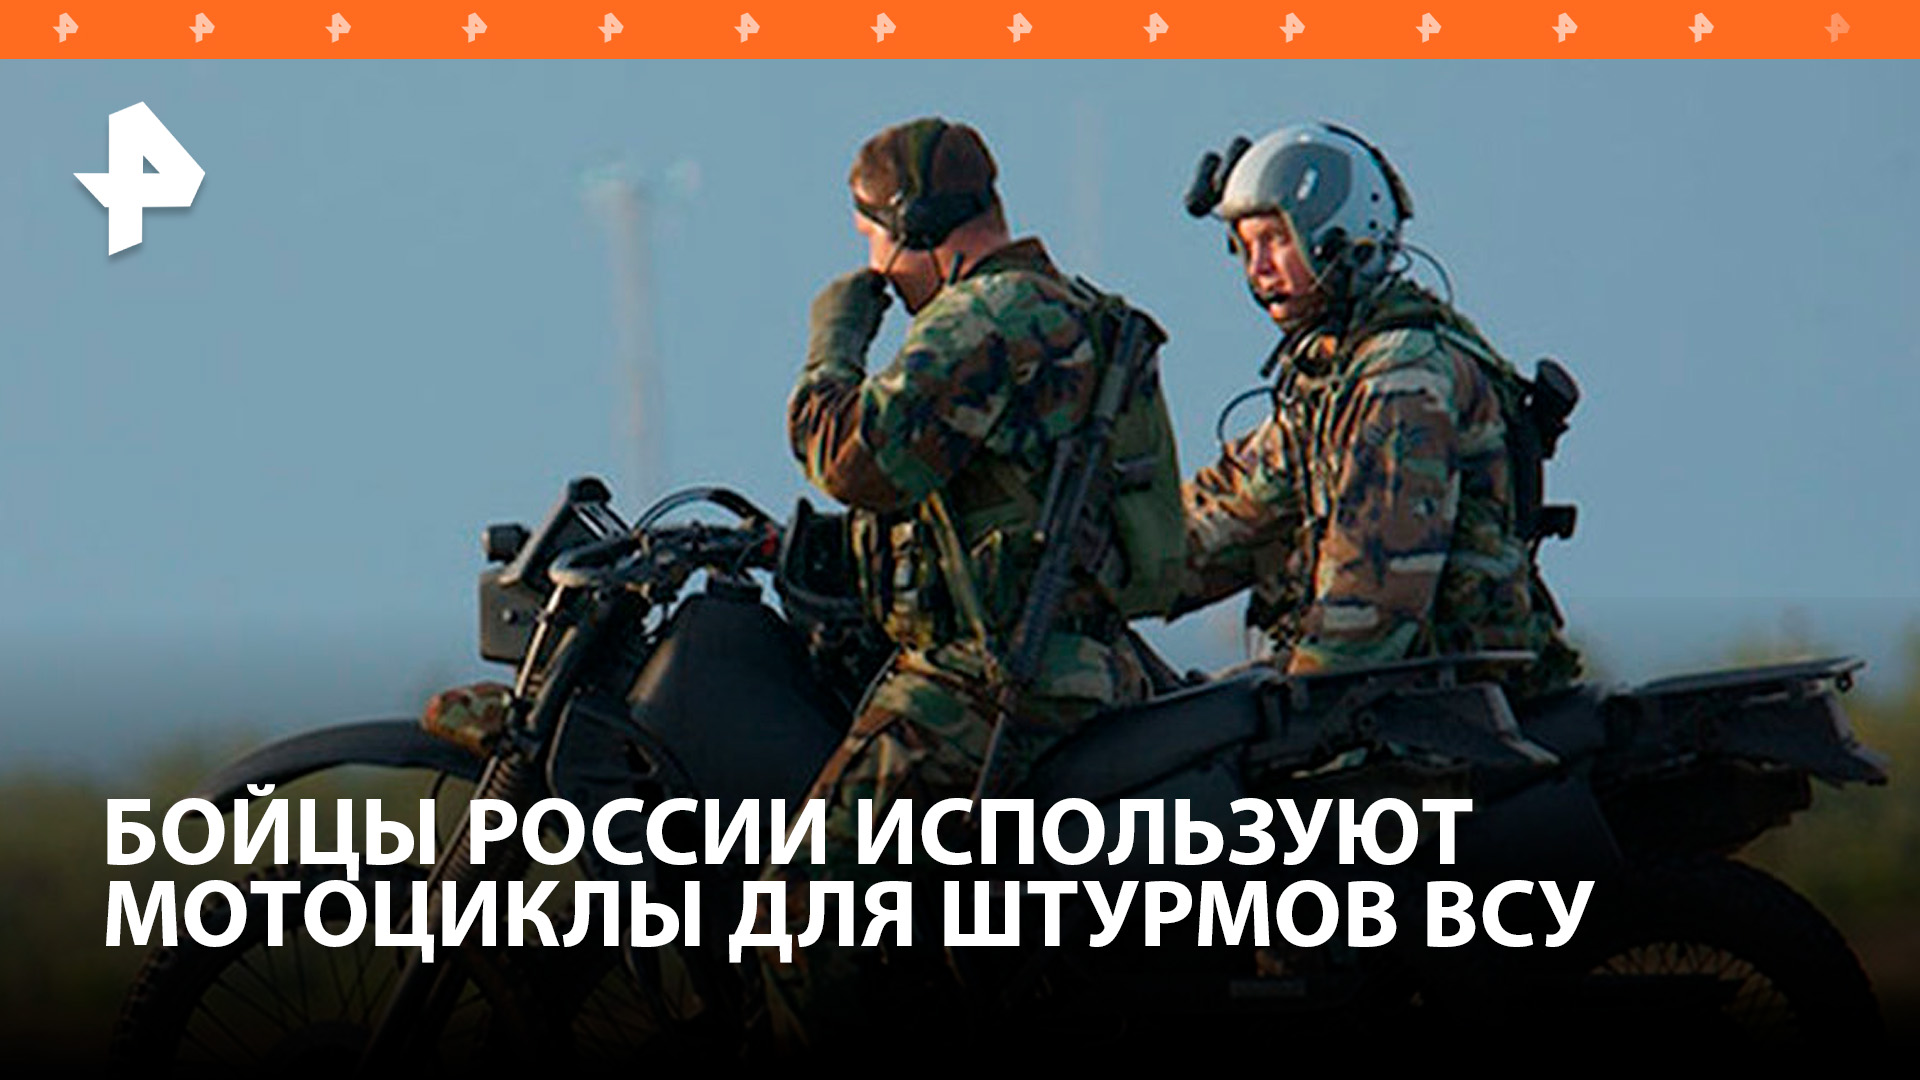 Российские военные начали применять мотоциклы для штурма позиций ВСУ / РЕН Новости